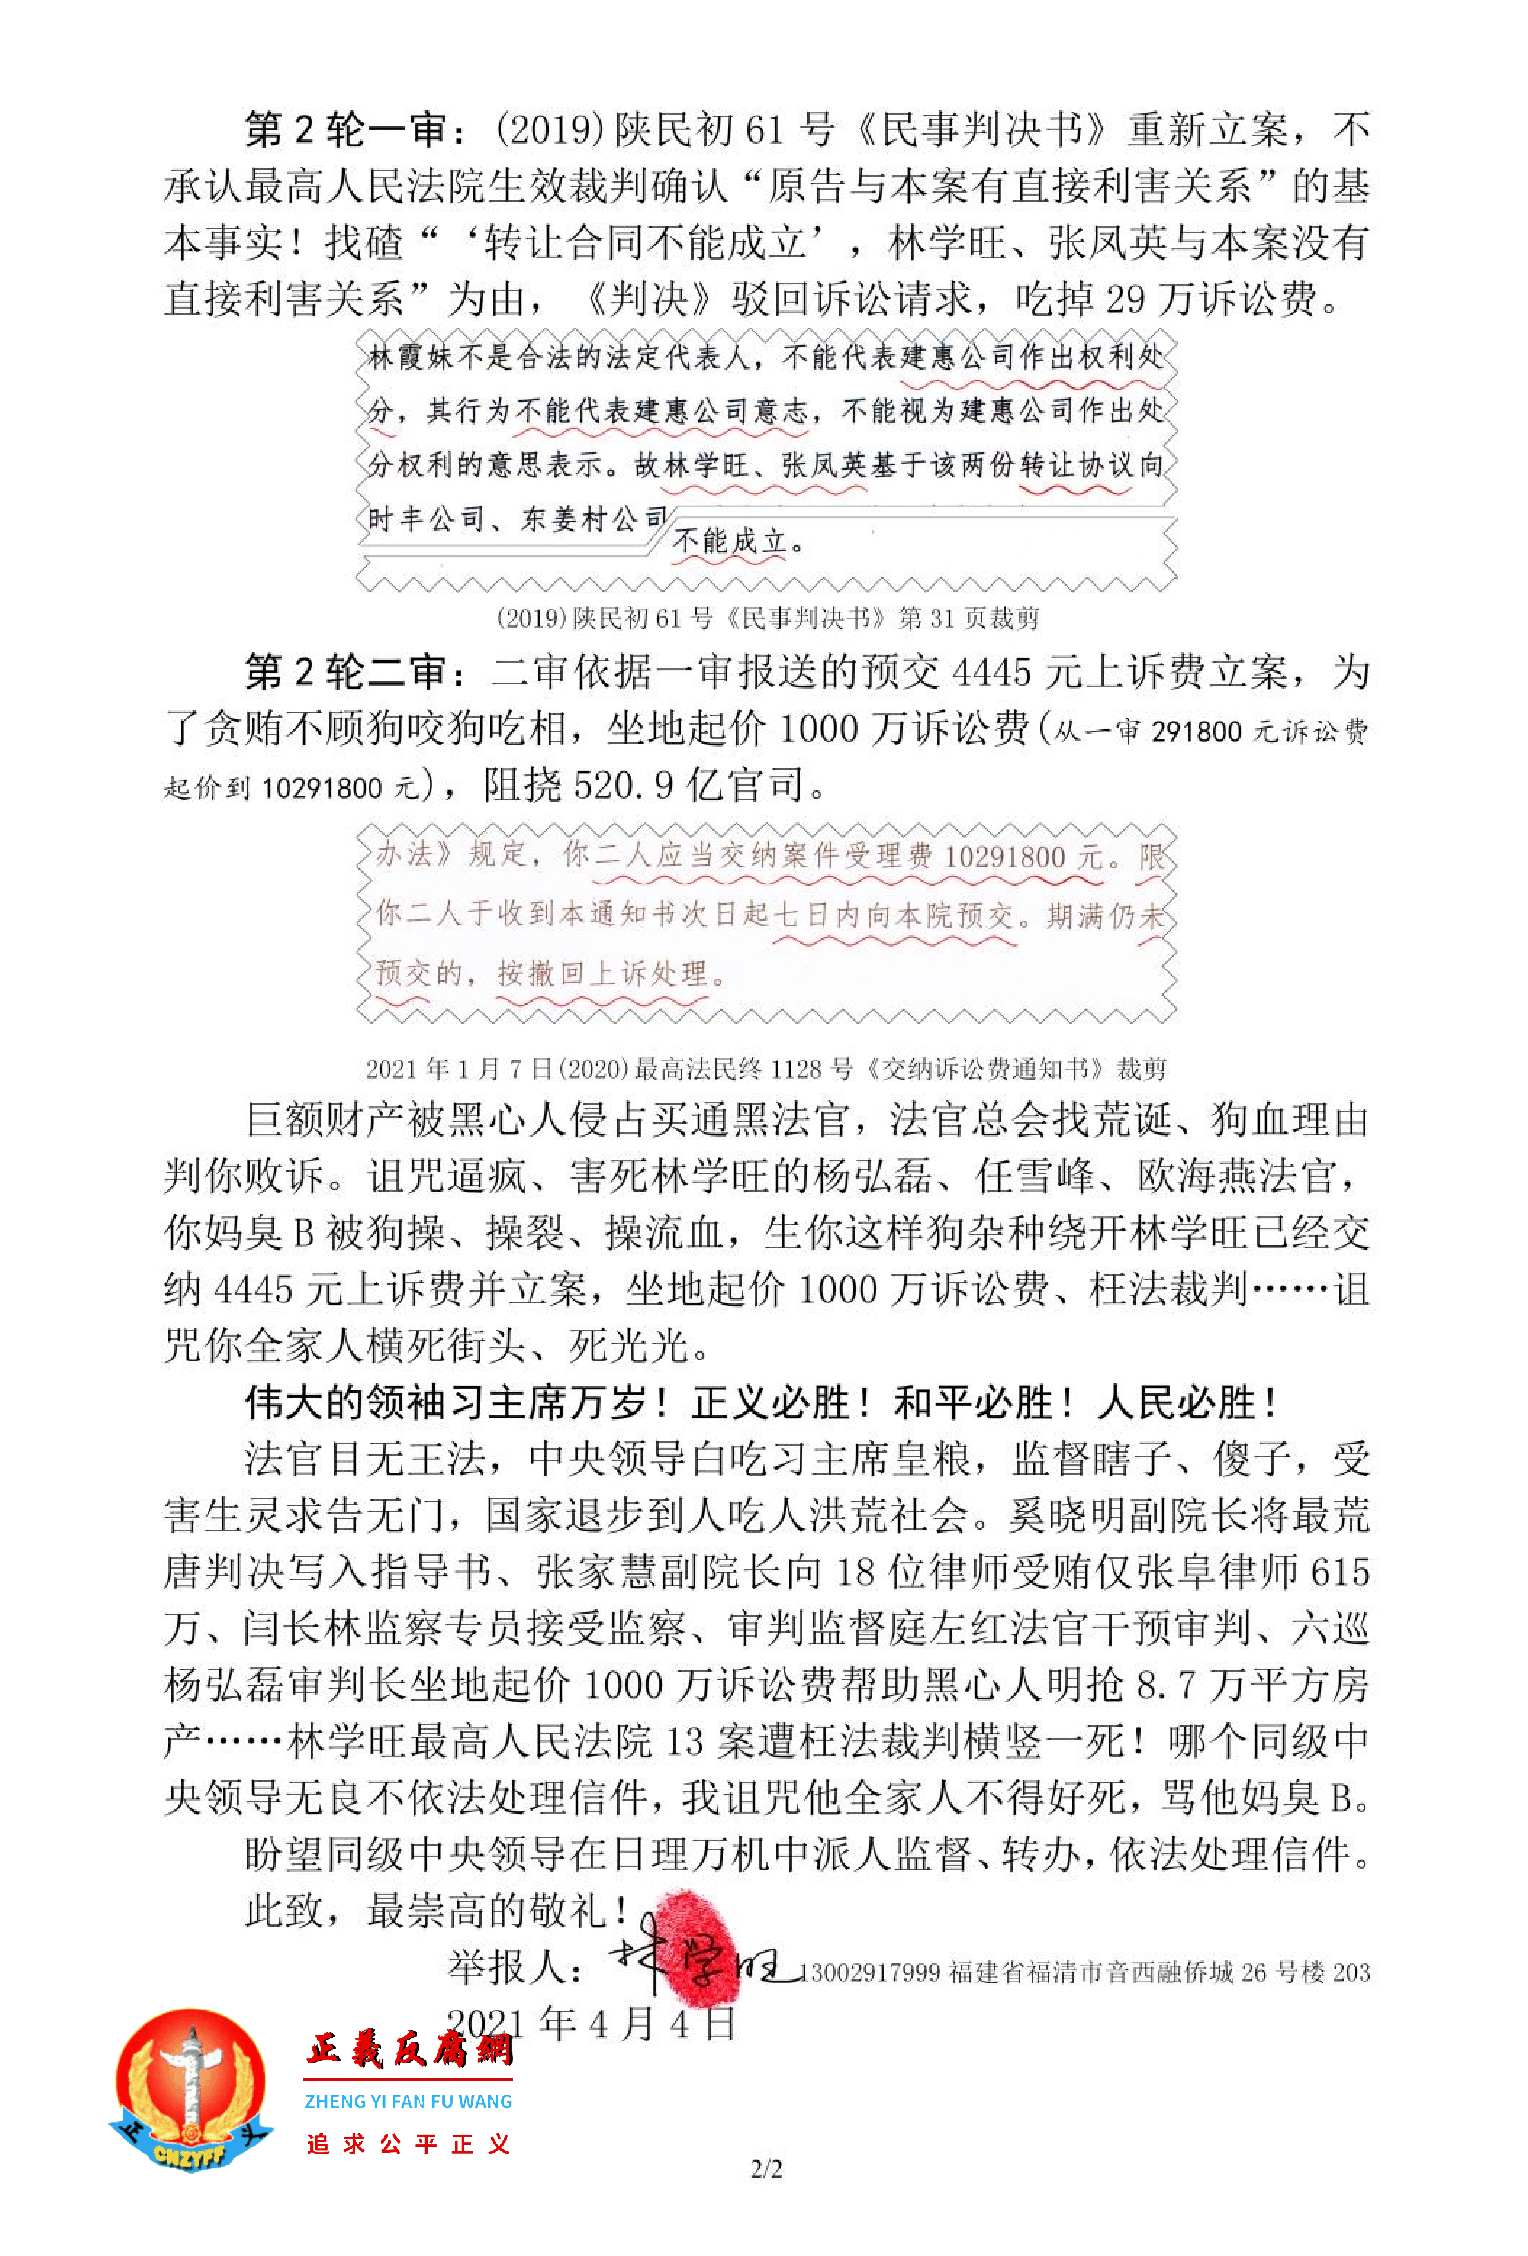 中国第一大案520.9亿官司枉法裁判举报、求救信内容：最高法院坐地起价，索要1000万诉讼费。 2.png